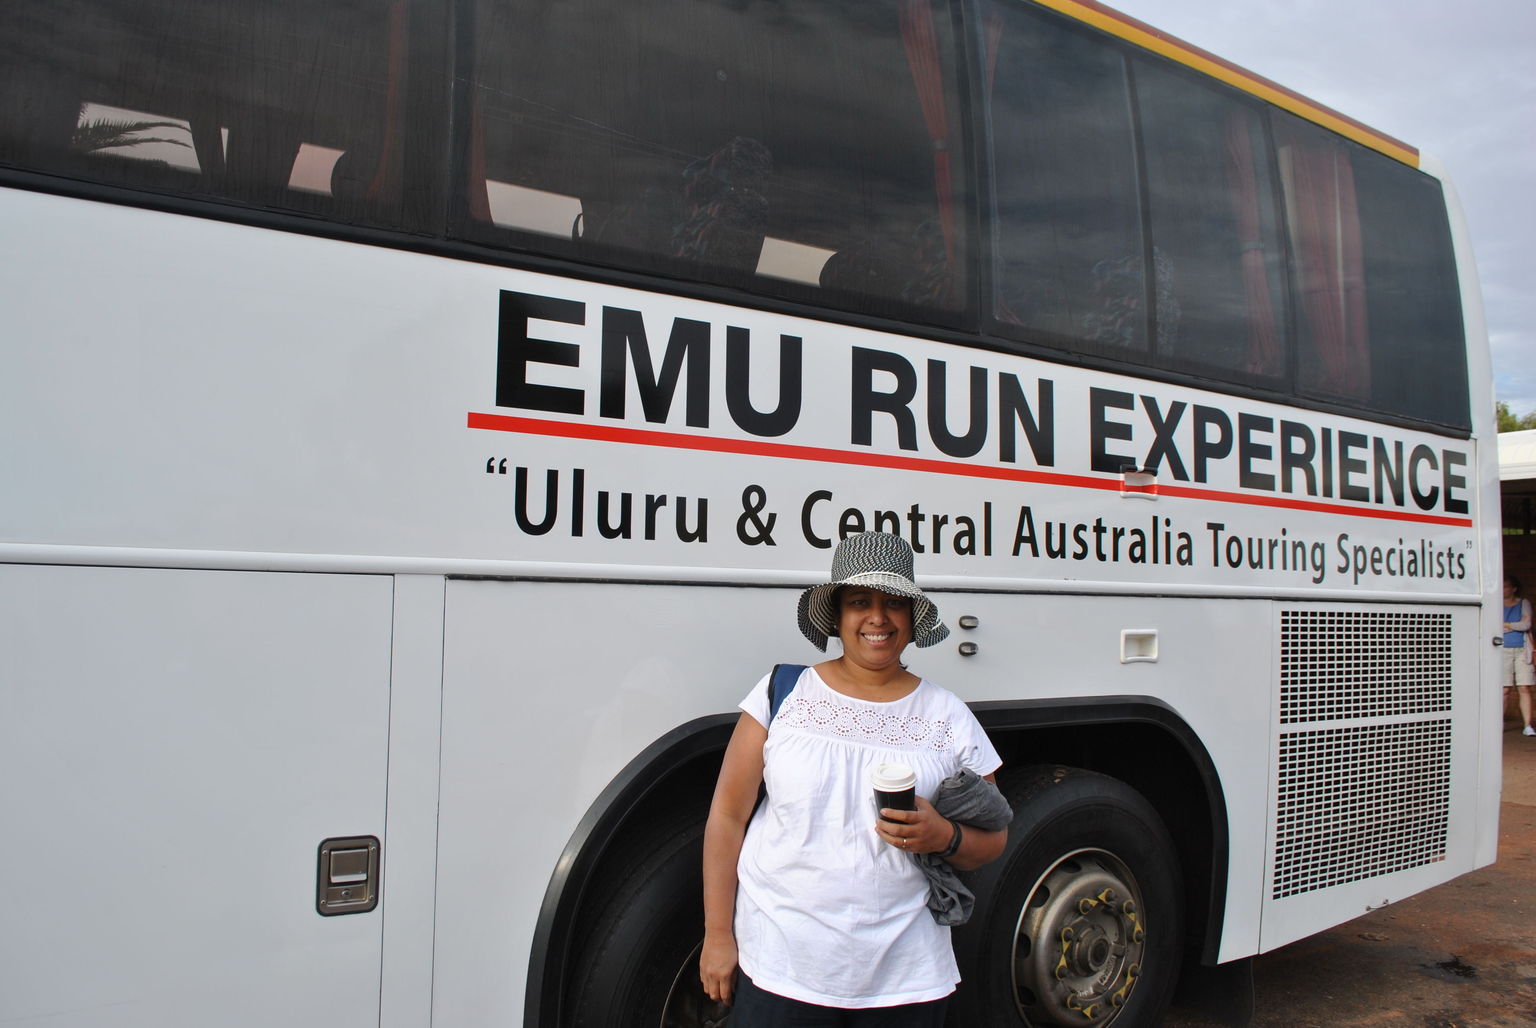 Our EMU RUN bus.